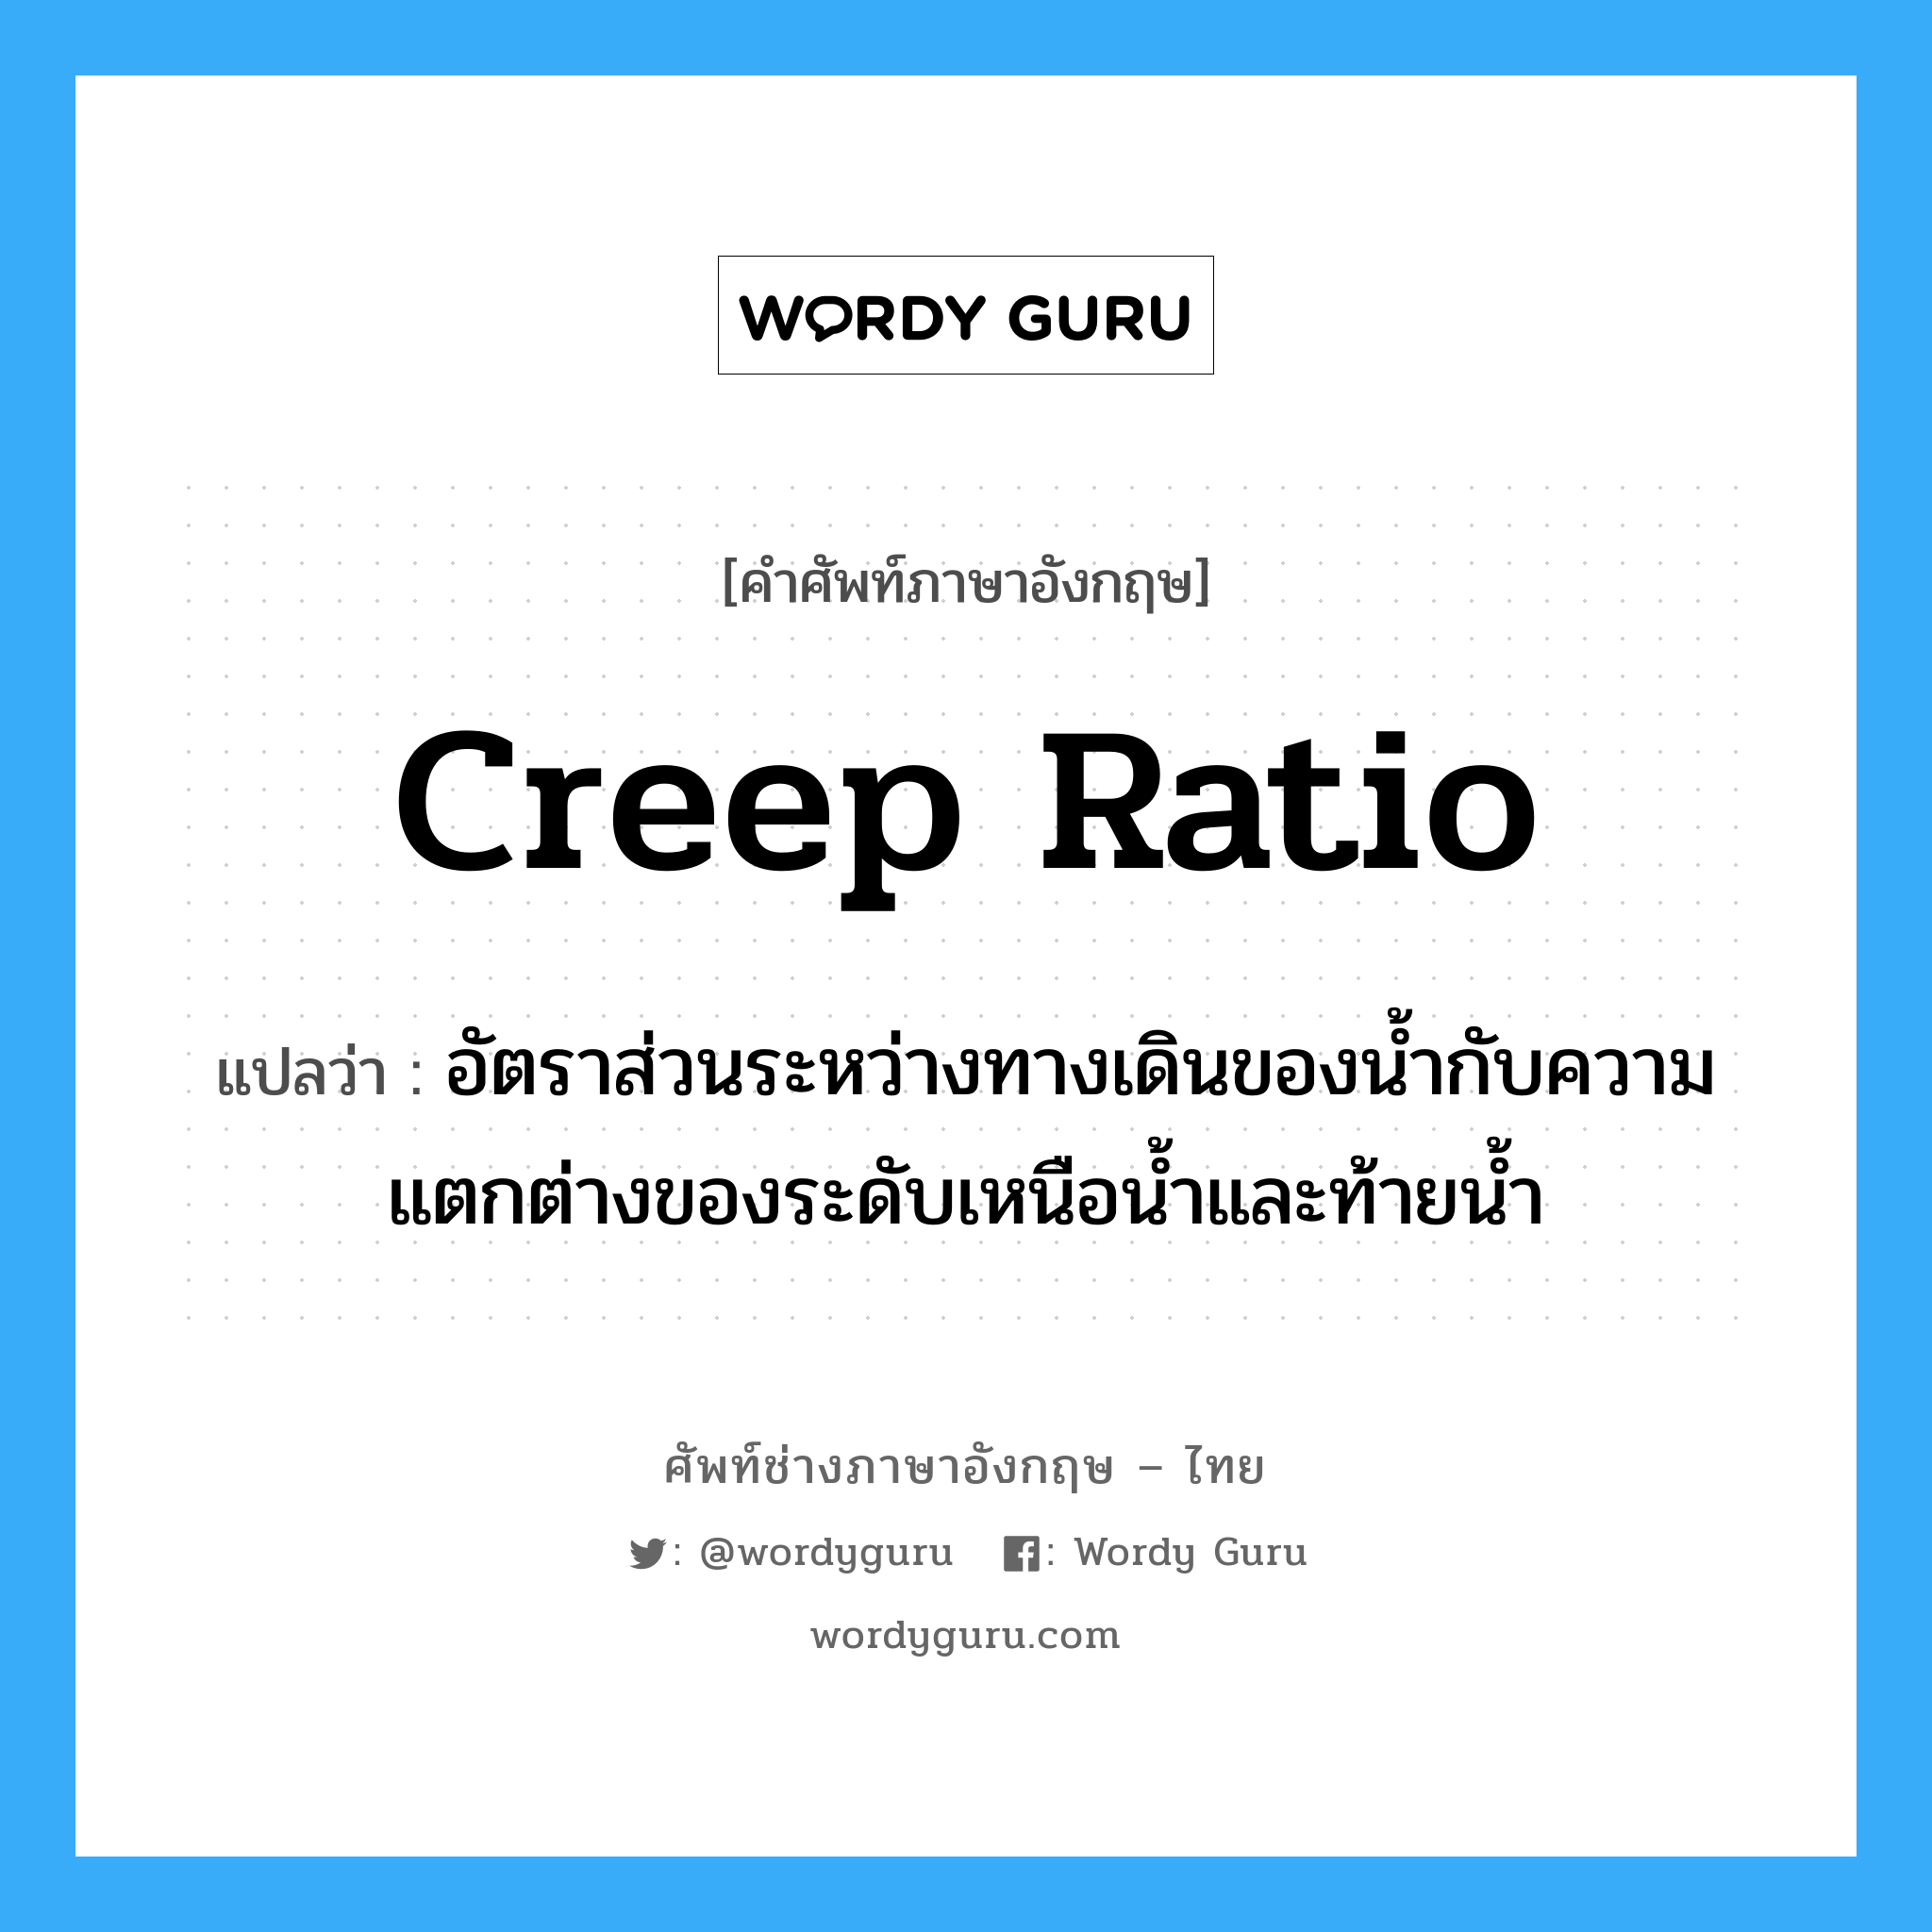 creep ratio แปลว่า?, คำศัพท์ช่างภาษาอังกฤษ - ไทย creep ratio คำศัพท์ภาษาอังกฤษ creep ratio แปลว่า อัตราส่วนระหว่างทางเดินของน้ำกับความแตกต่างของระดับเหนือน้ำและท้ายน้ำ